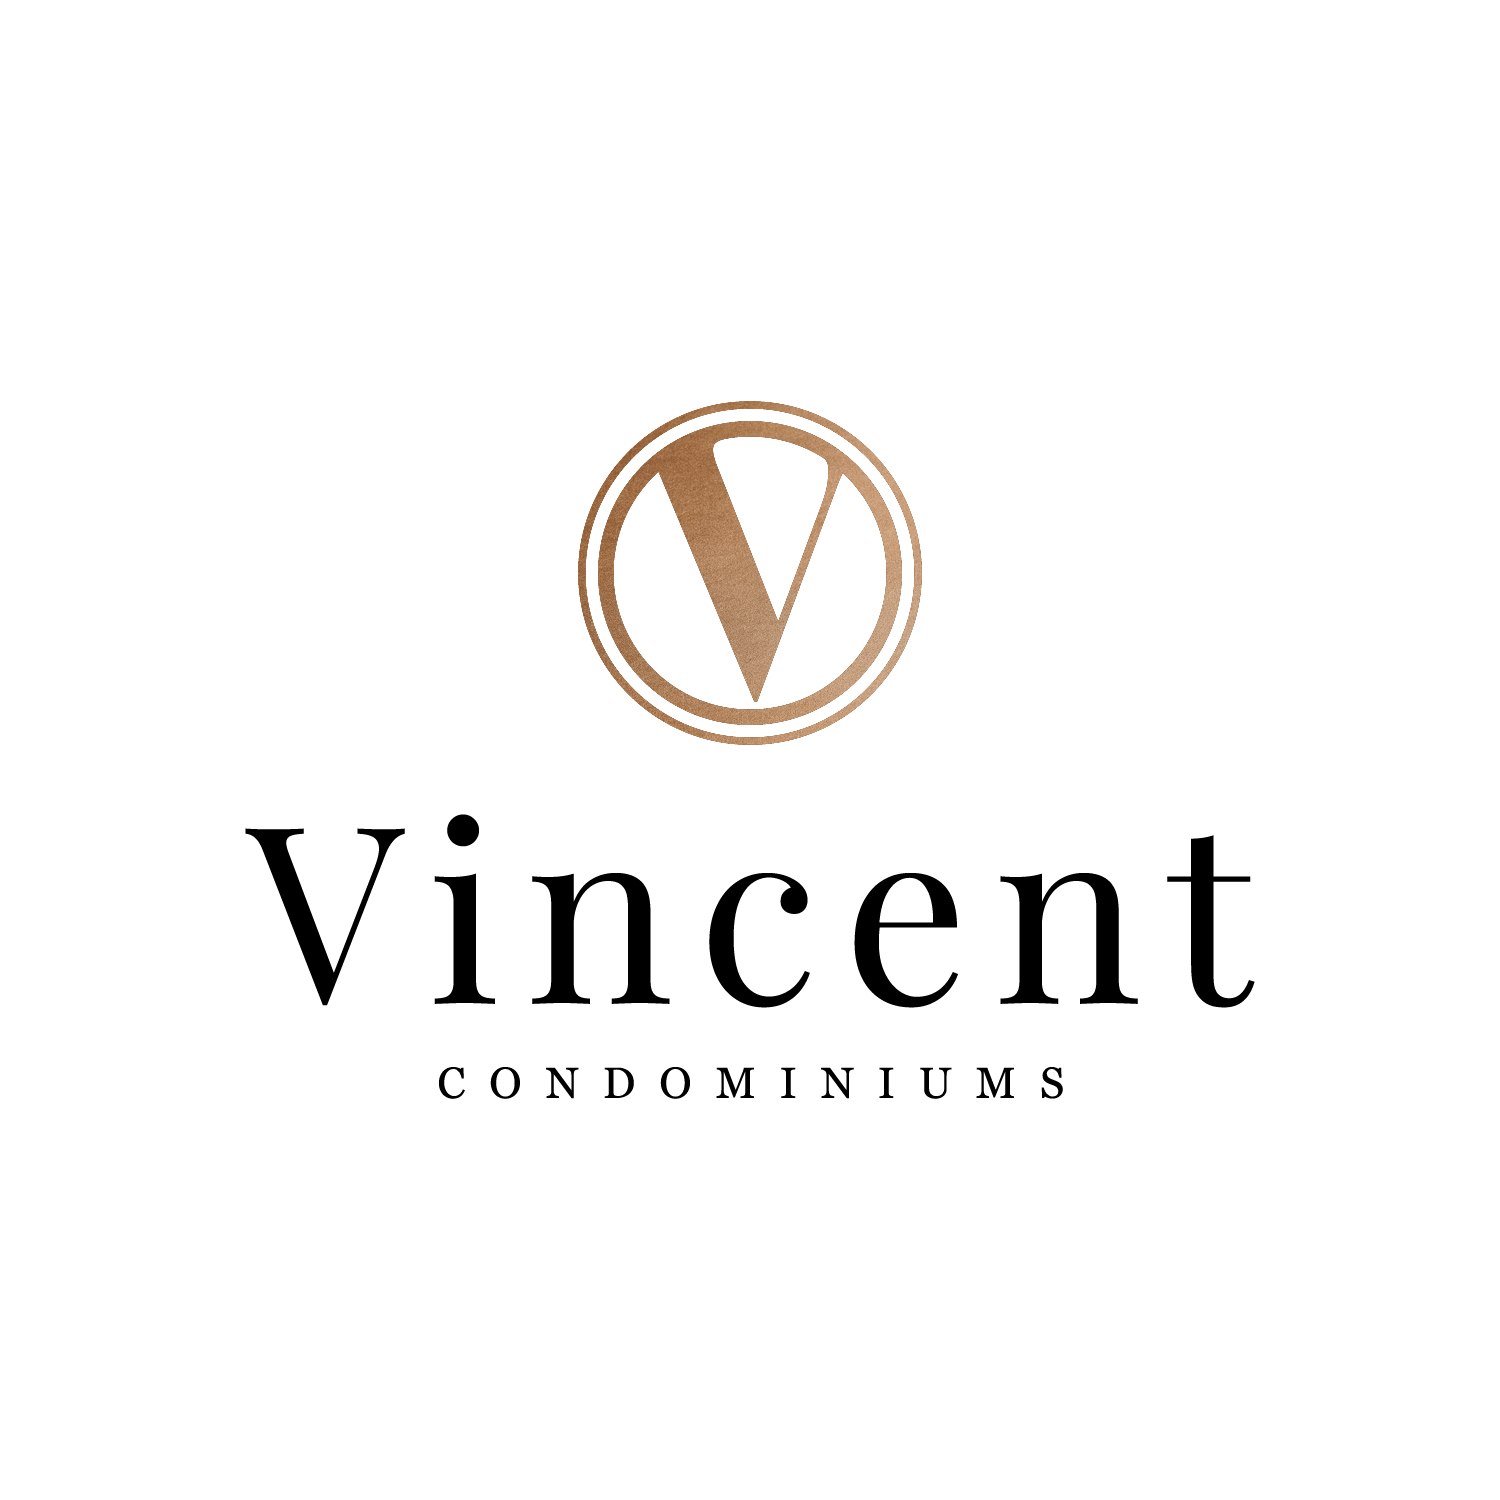 Vincent Condominiums